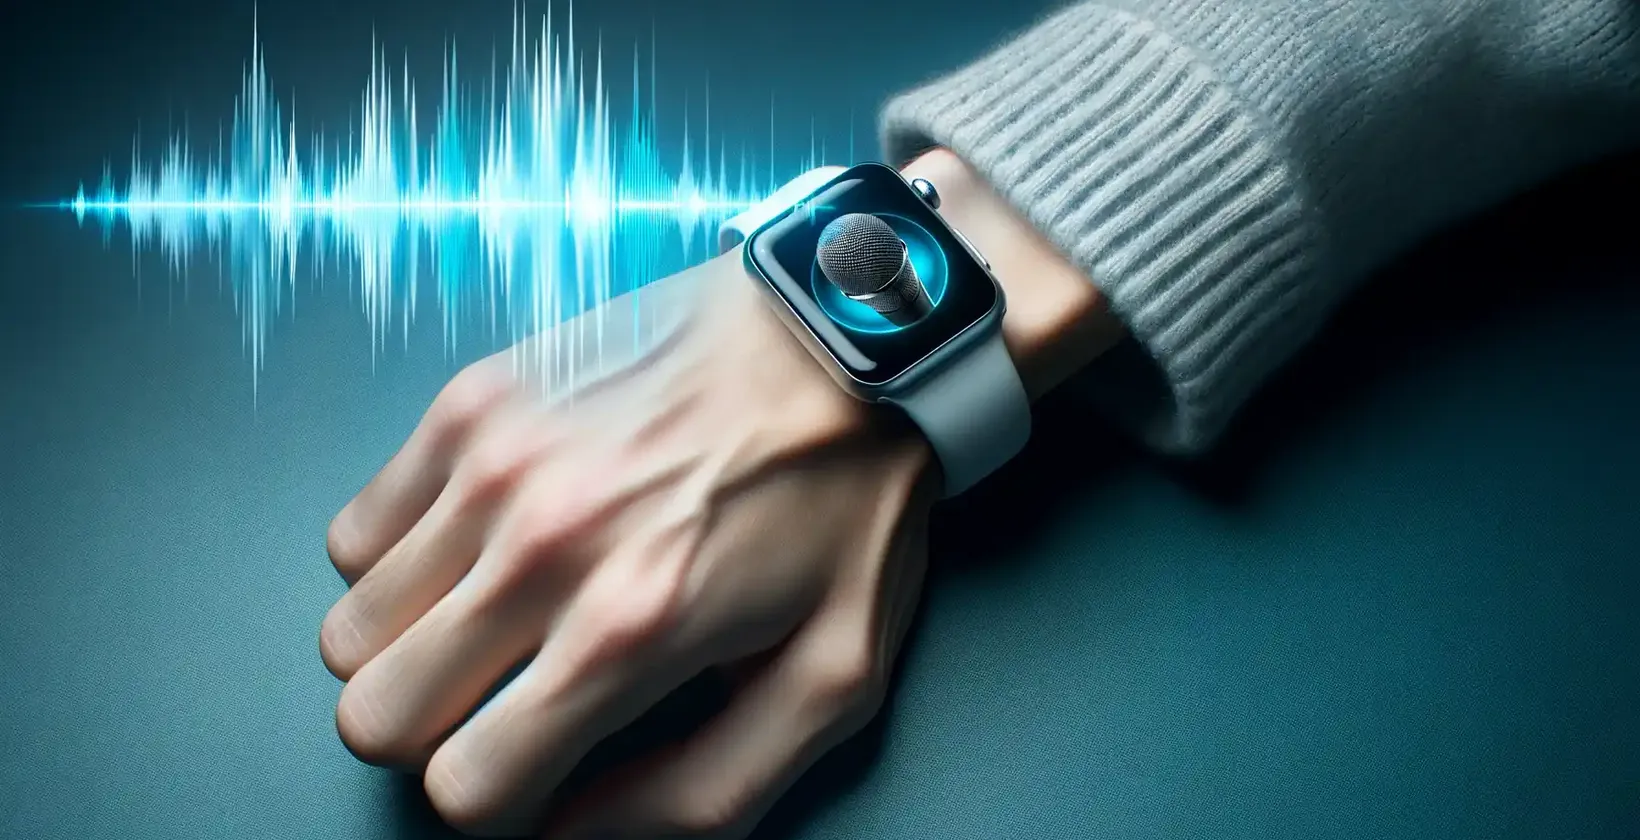 En närbild av en persons handled med en Apple Watch som visar en mikrofonikon, vilket indikerar dikteringsläge